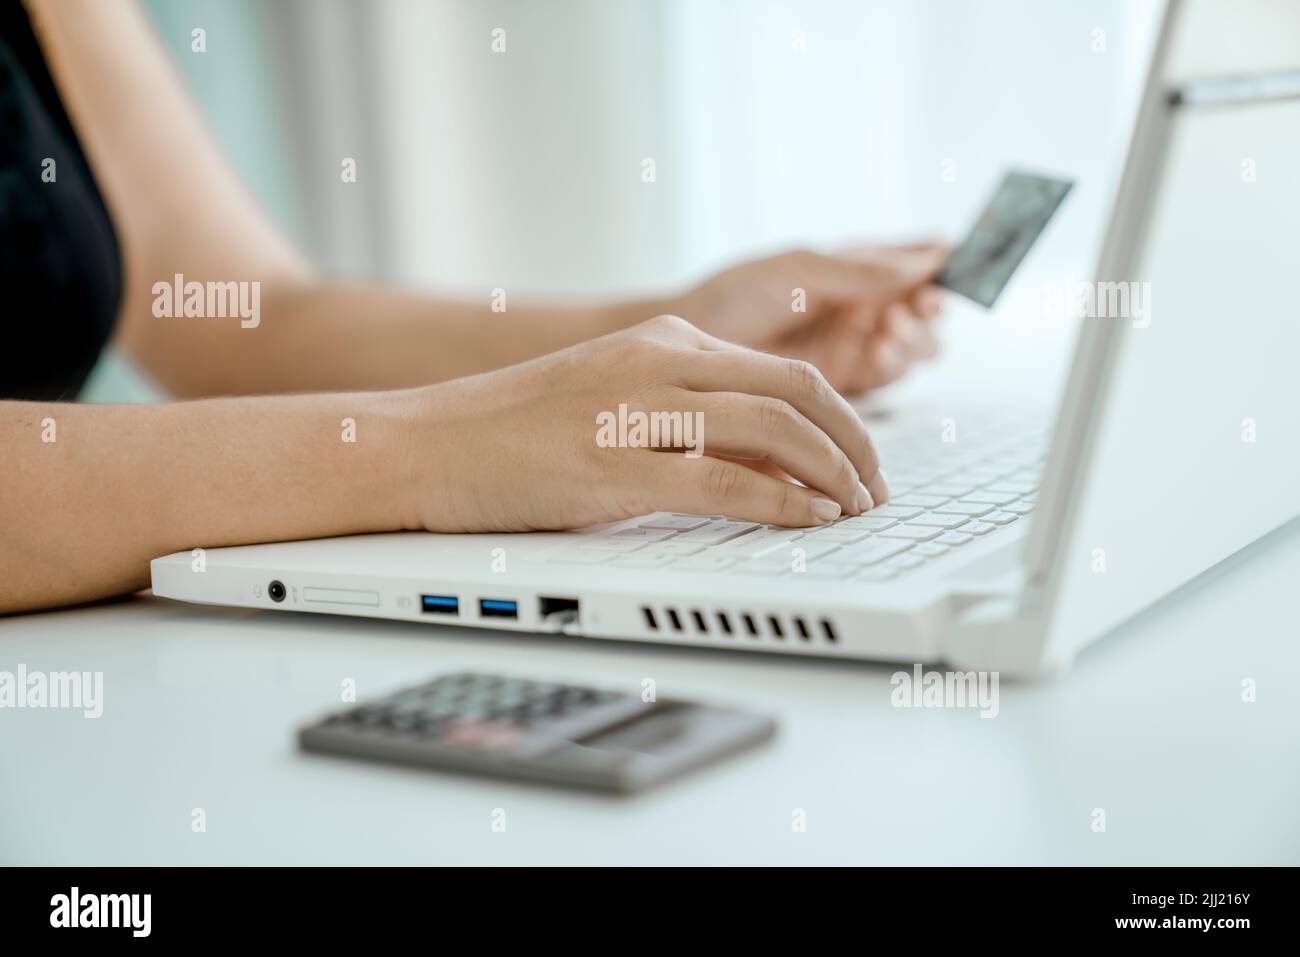 Mujer hace compras en línea sentado frente al ordenador portátil con la tarjeta bancaria en la mano. Manos en primer plano. Concepto de compras en línea y transferencia de dinero. Foto de stock